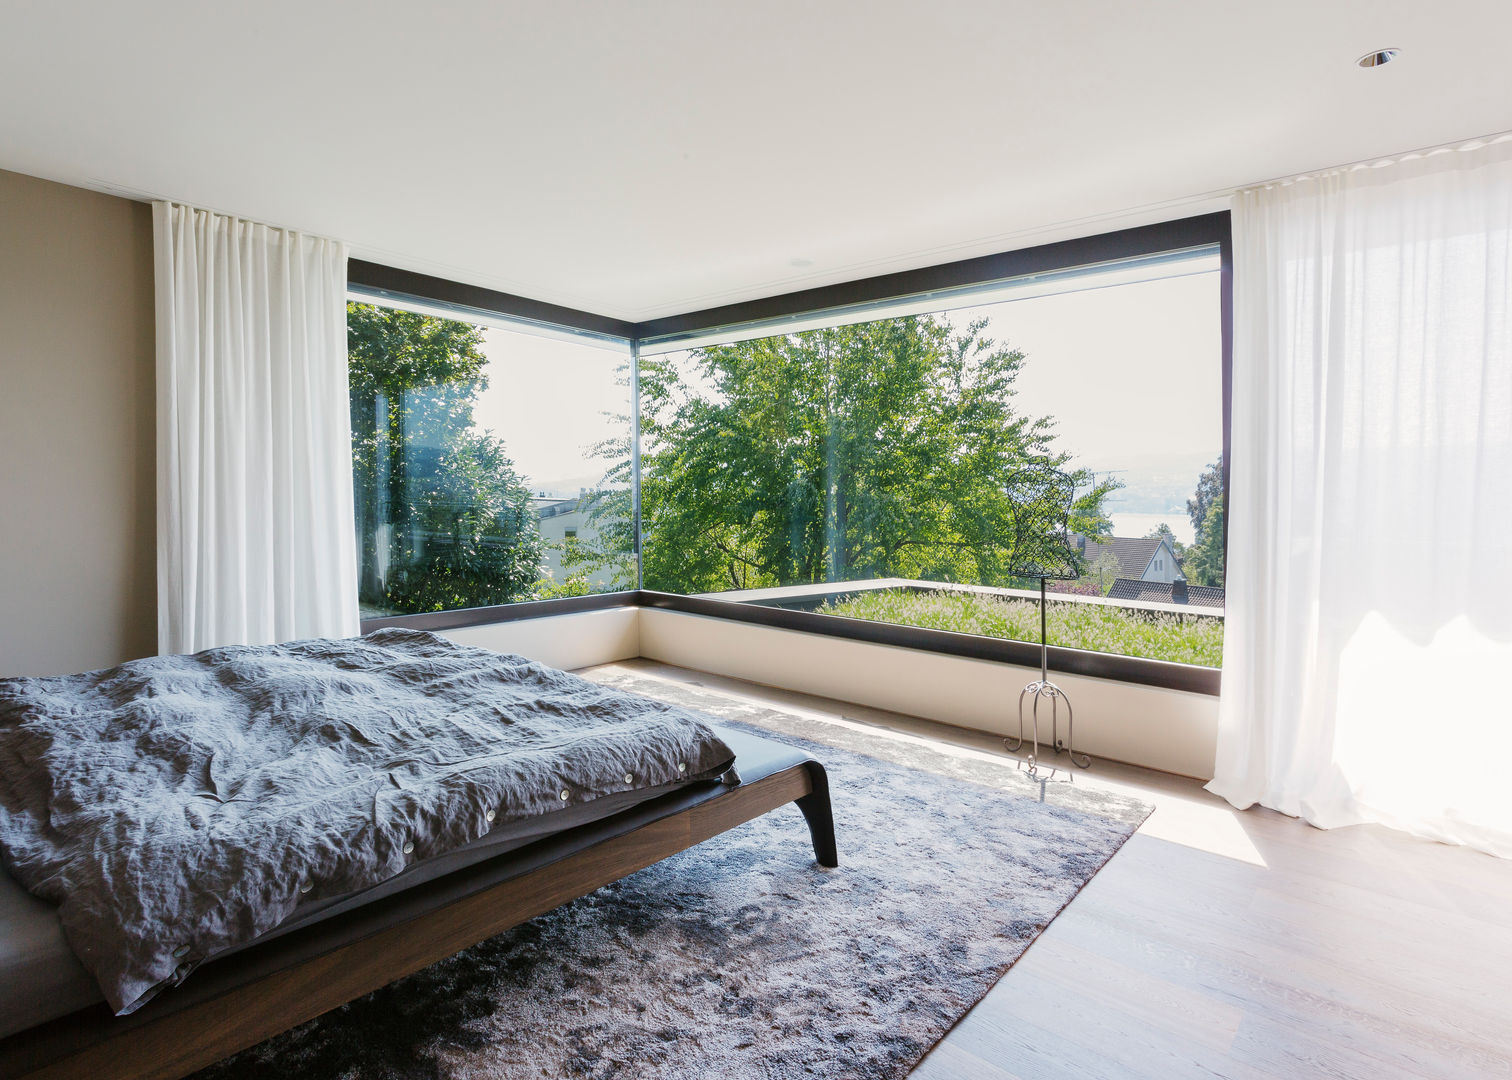 Objekt 336: Traumhaftes Einfamilienhaus mit Panoramablick , meier architekten zürich meier architekten zürich Kamar Tidur Modern